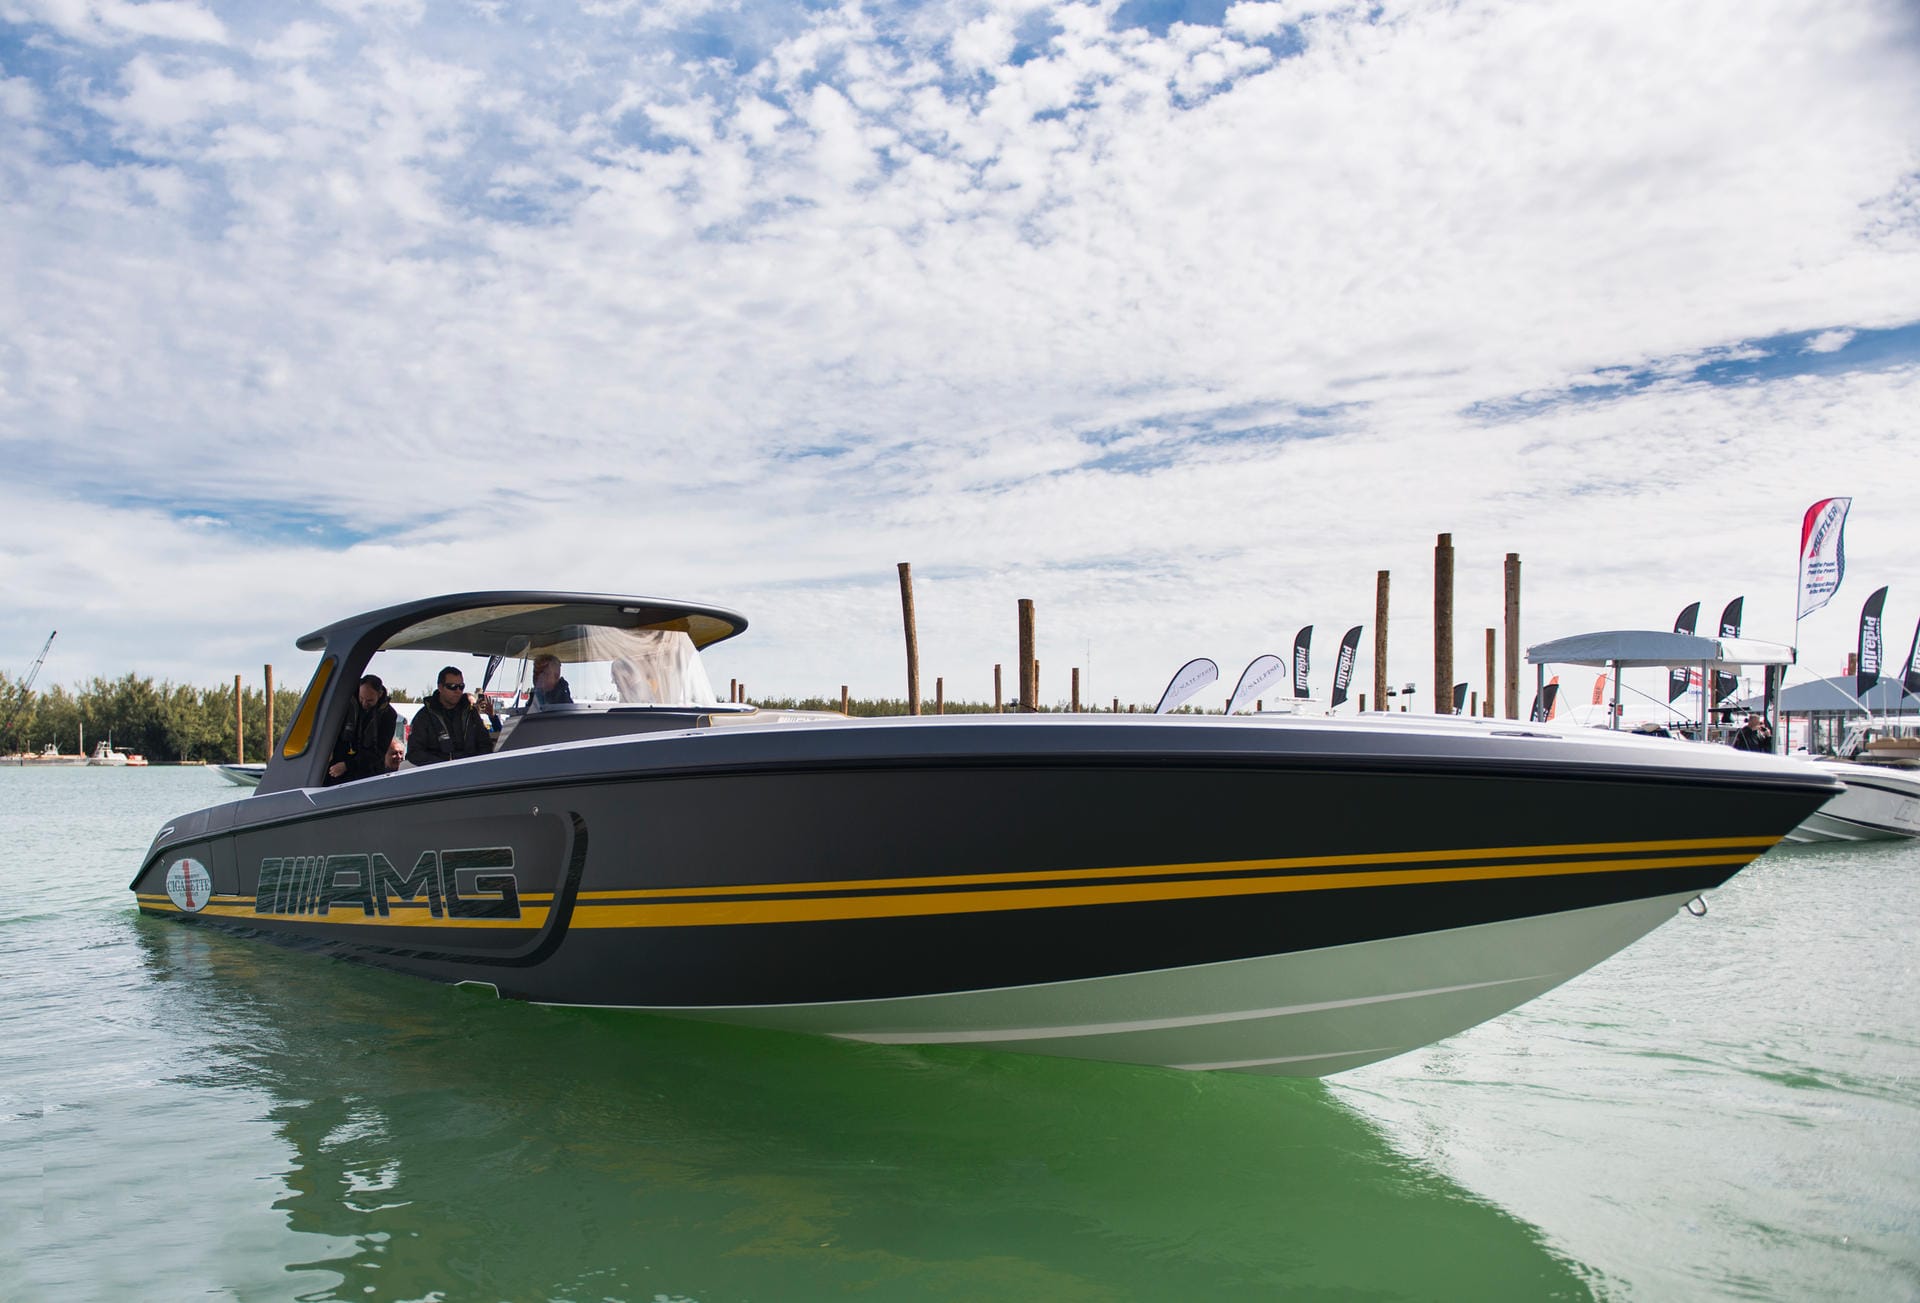 Weltpremiere: Bei der Miami International Boat Show, die in diesem Jahr erstmals in der Nähe von Key Biscayne stattfand, wurde die 41’ SD GT3 erstmals öffentlich präsentiert. Schon im Hafen sorgte sie für Begeisterung bei den Zuschauern.